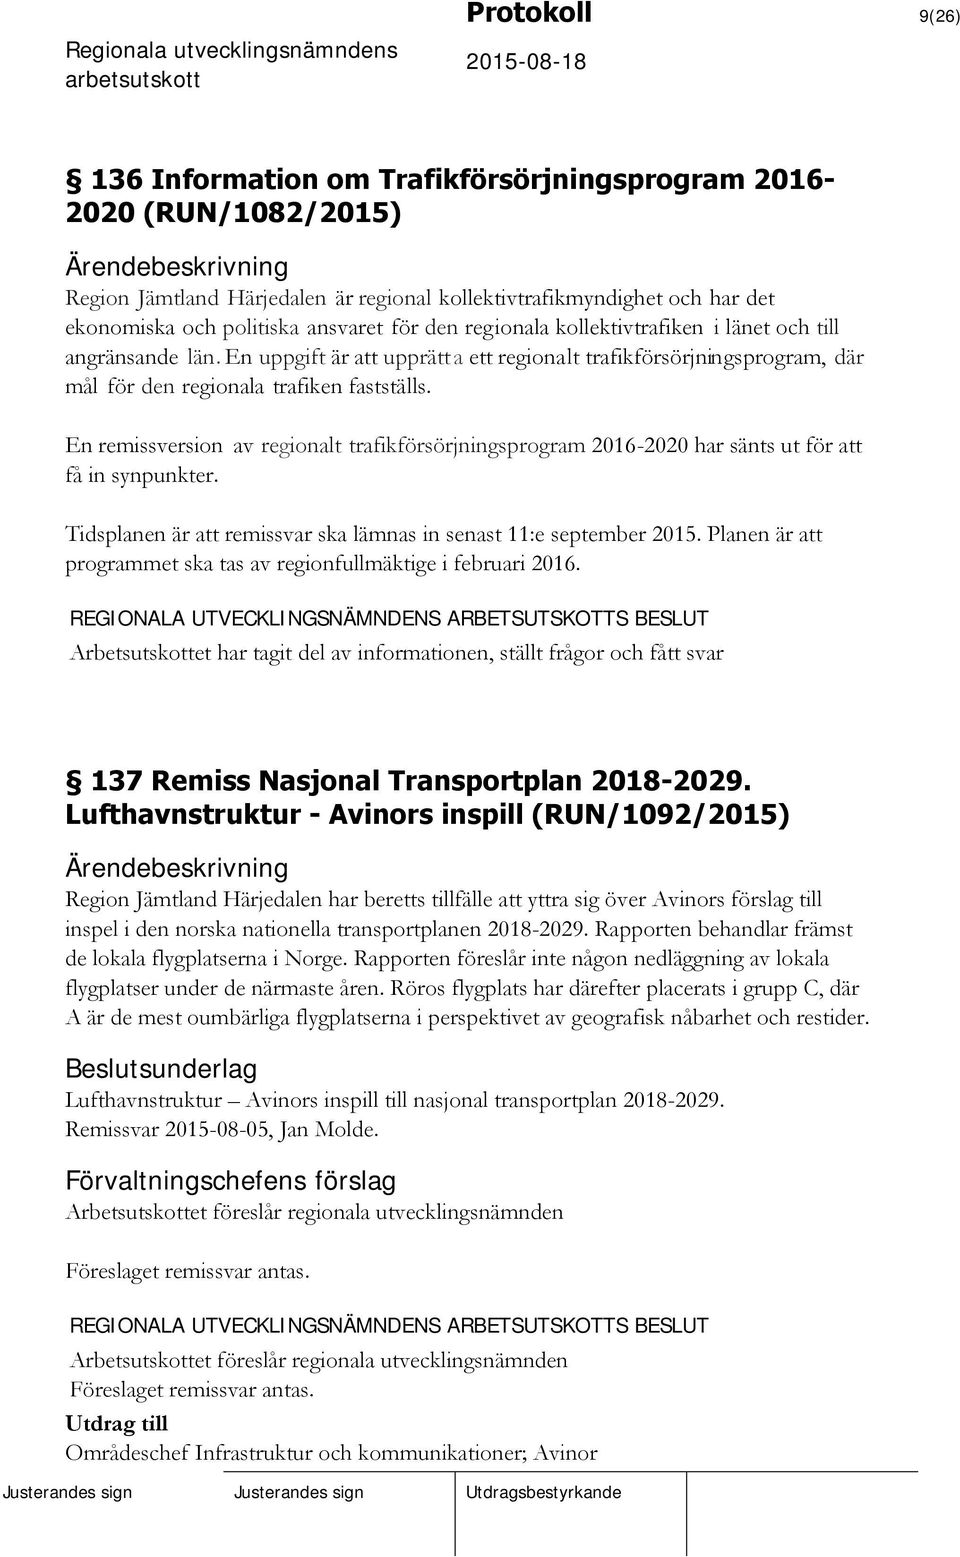 En remissversion av regionalt trafikförsörjningsprogram 2016-2020 har sänts ut för att få in synpunkter. Tidsplanen är att remissvar ska lämnas in senast 11:e september 2015.